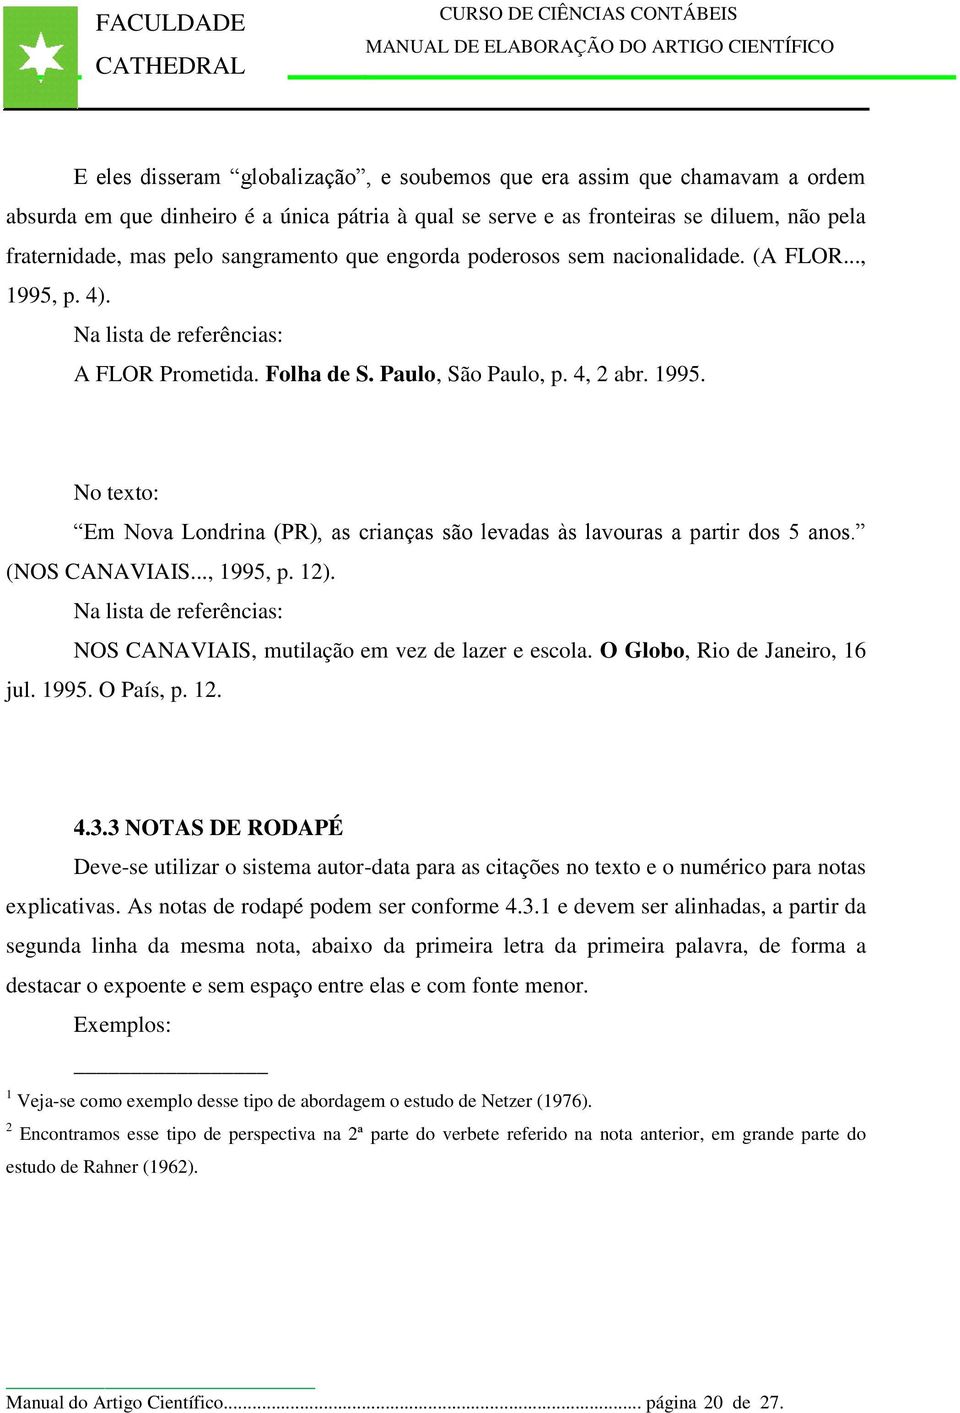 (NOS CANAVIAIS..., 1995, p. 12). Na lista de referências: NOS CANAVIAIS, mutilação em vez de lazer e escola. O Globo, Rio de Janeiro, 16 jul. 1995. O País, p. 12. 4.3.